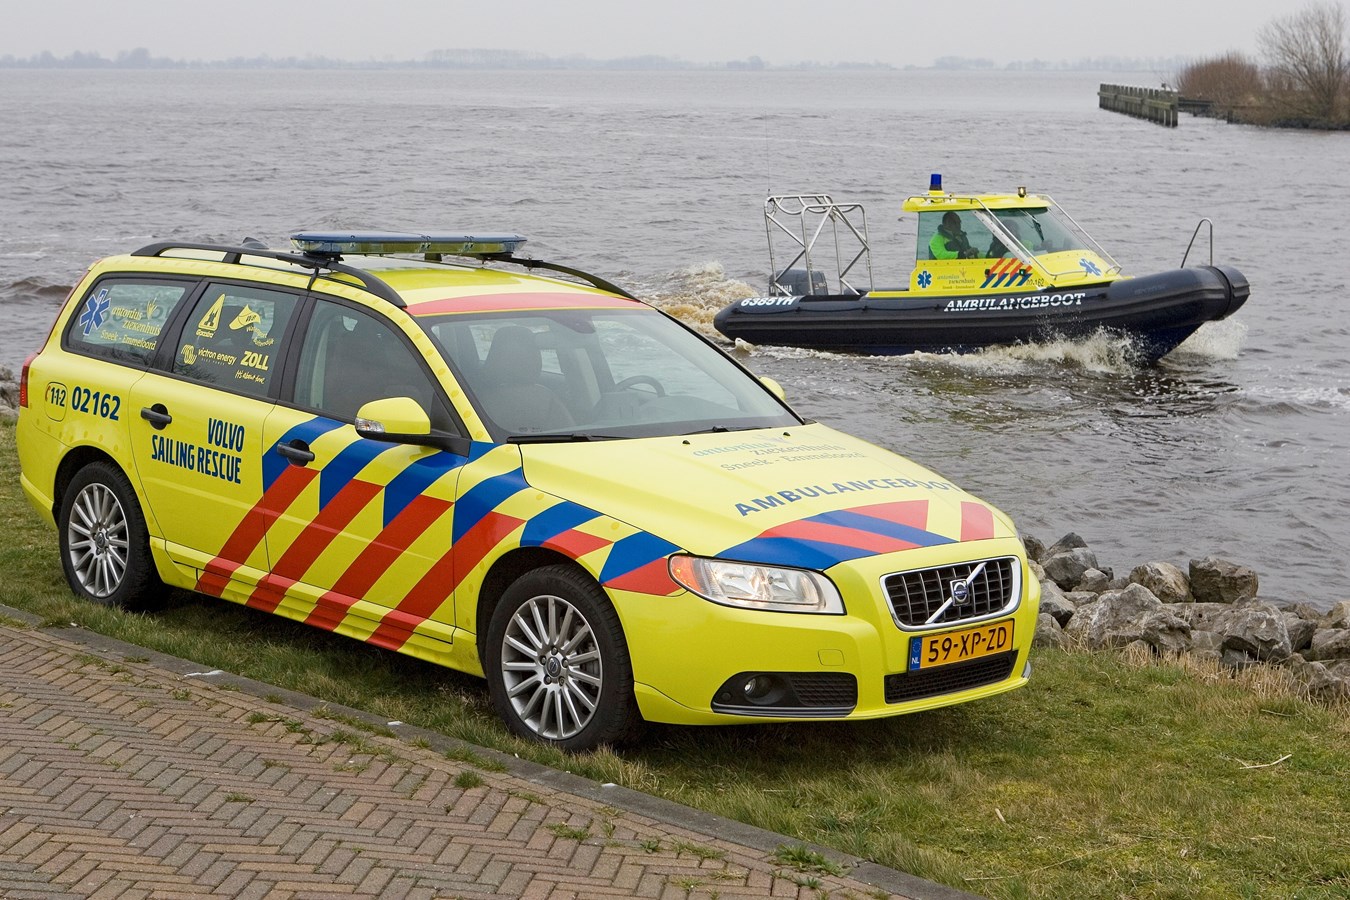 Ambulance - Volvo V70 - 2008